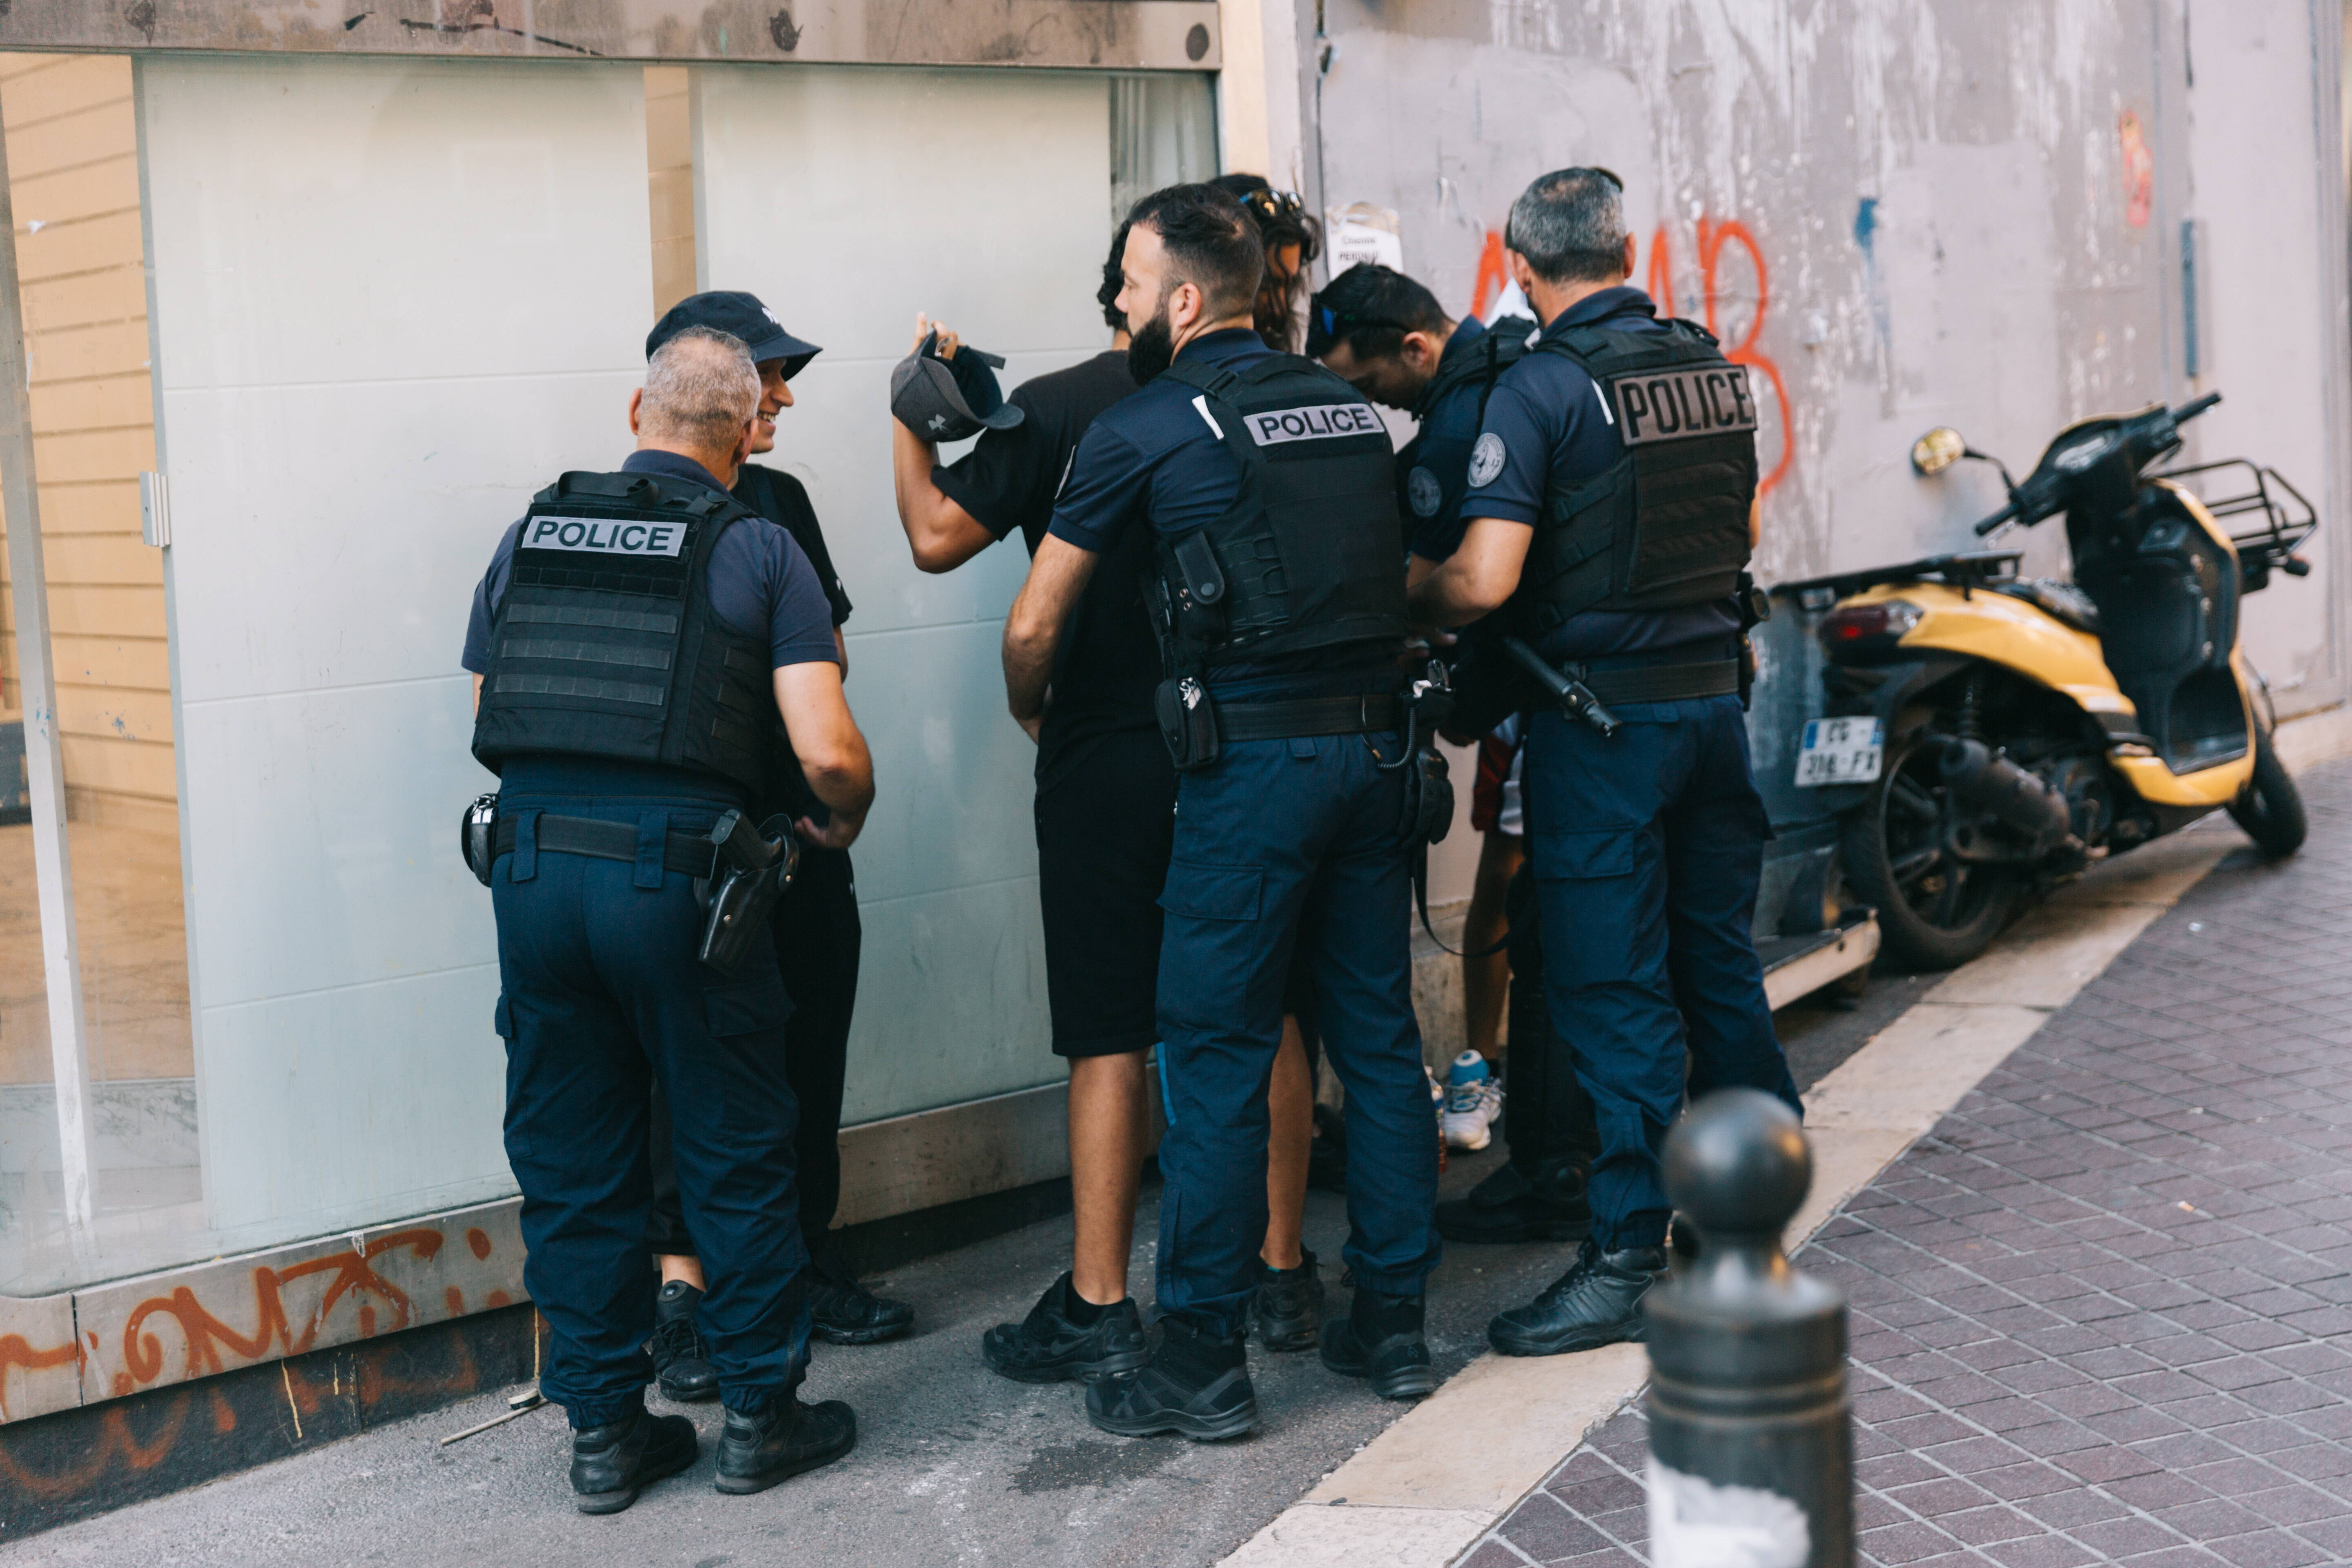 Francuska policja przeprowadza kontrolę osobistą podczas patrolu w dzielnicy Canebière w Marsylii.